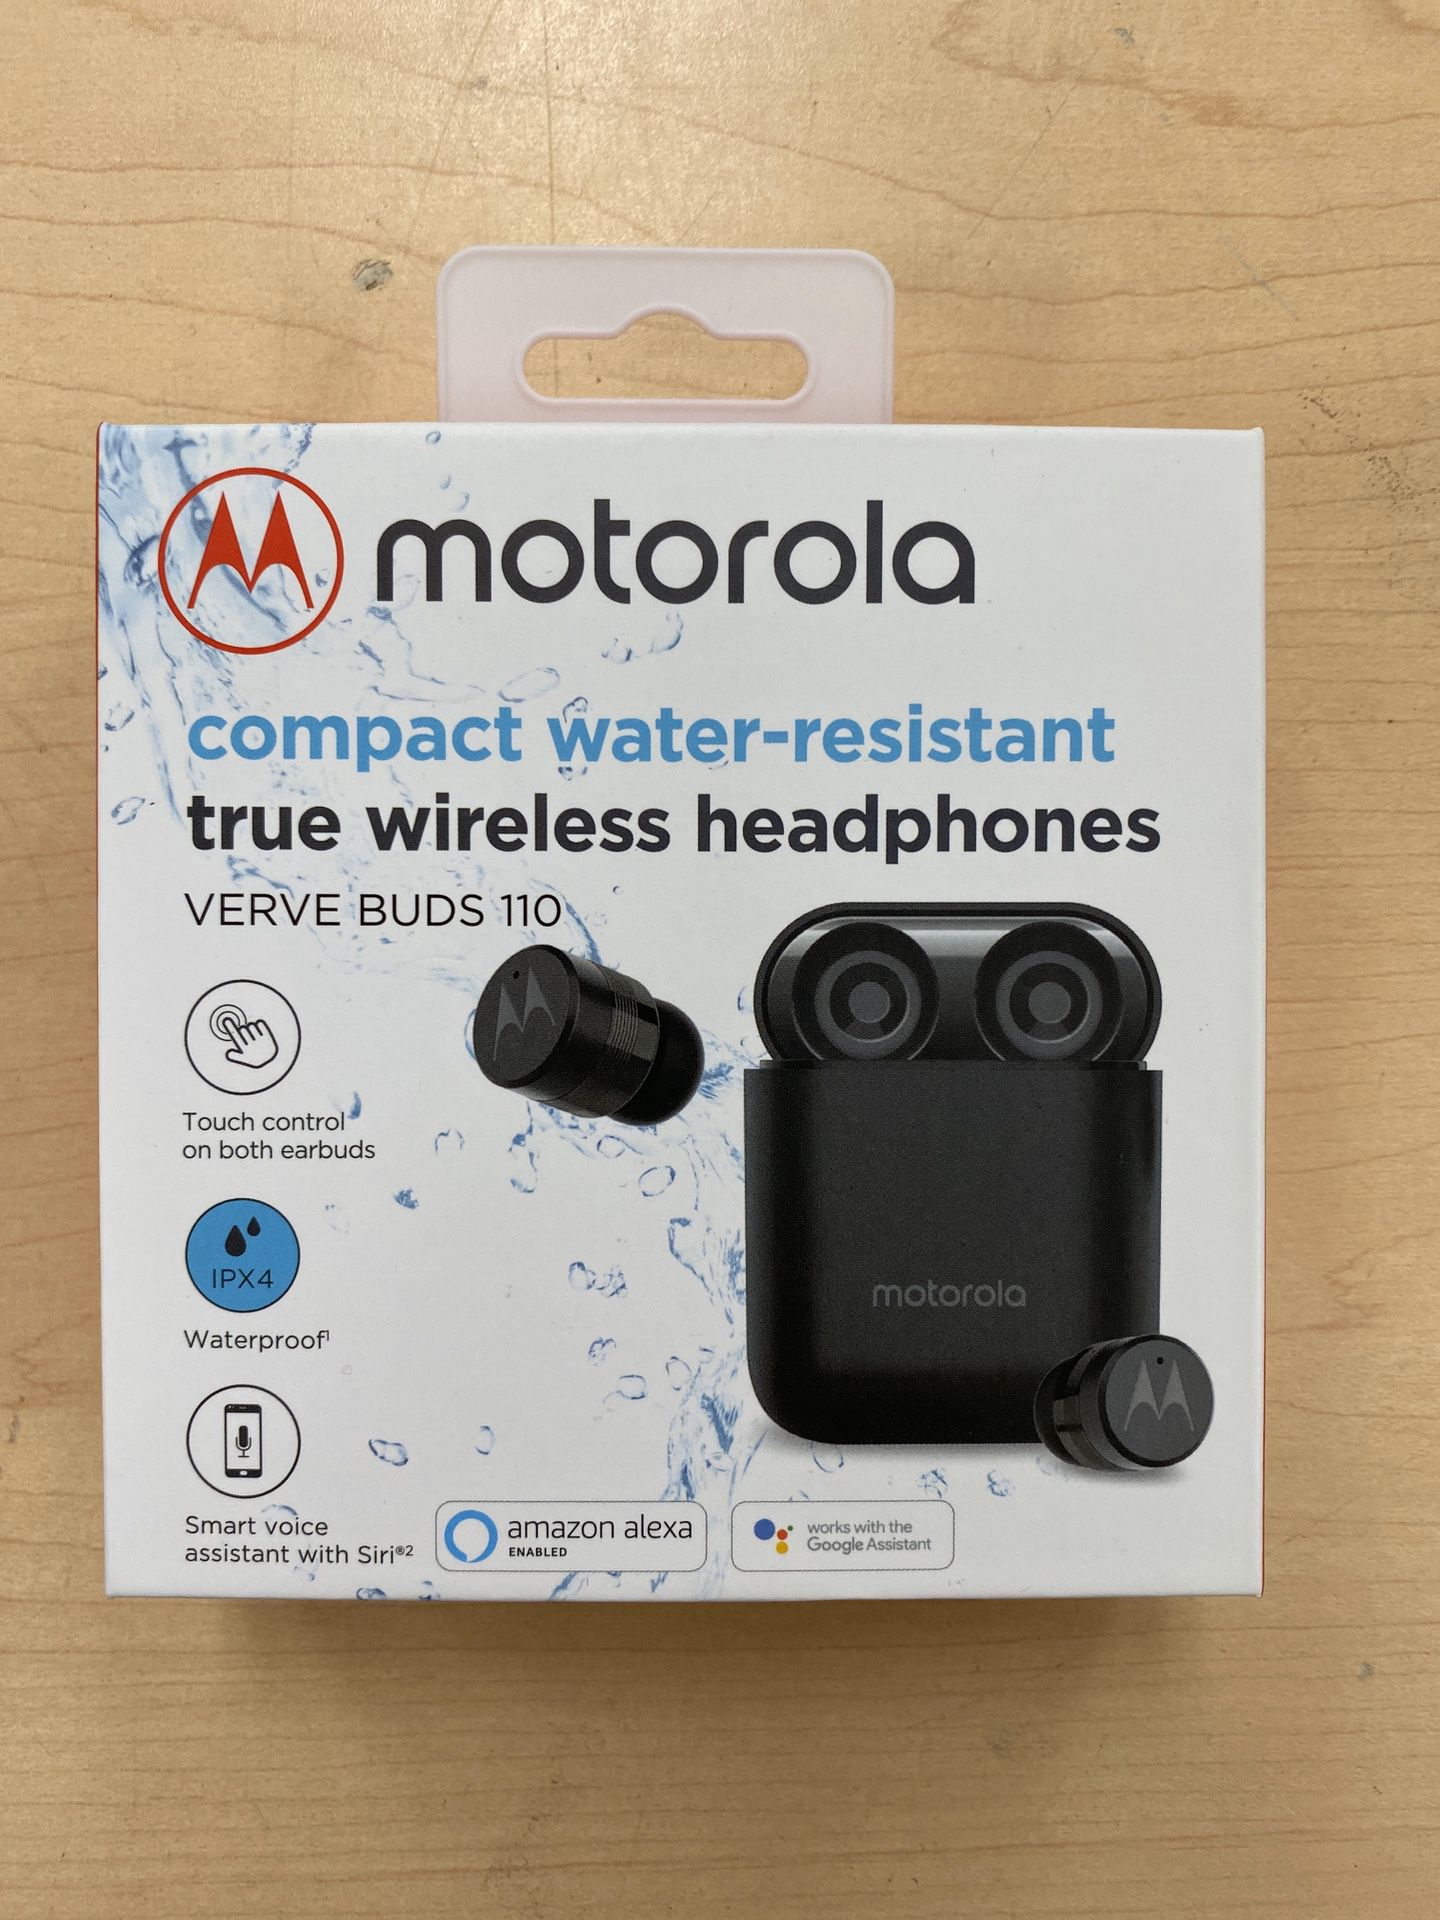 Brand new Motorola Verve Buds 110